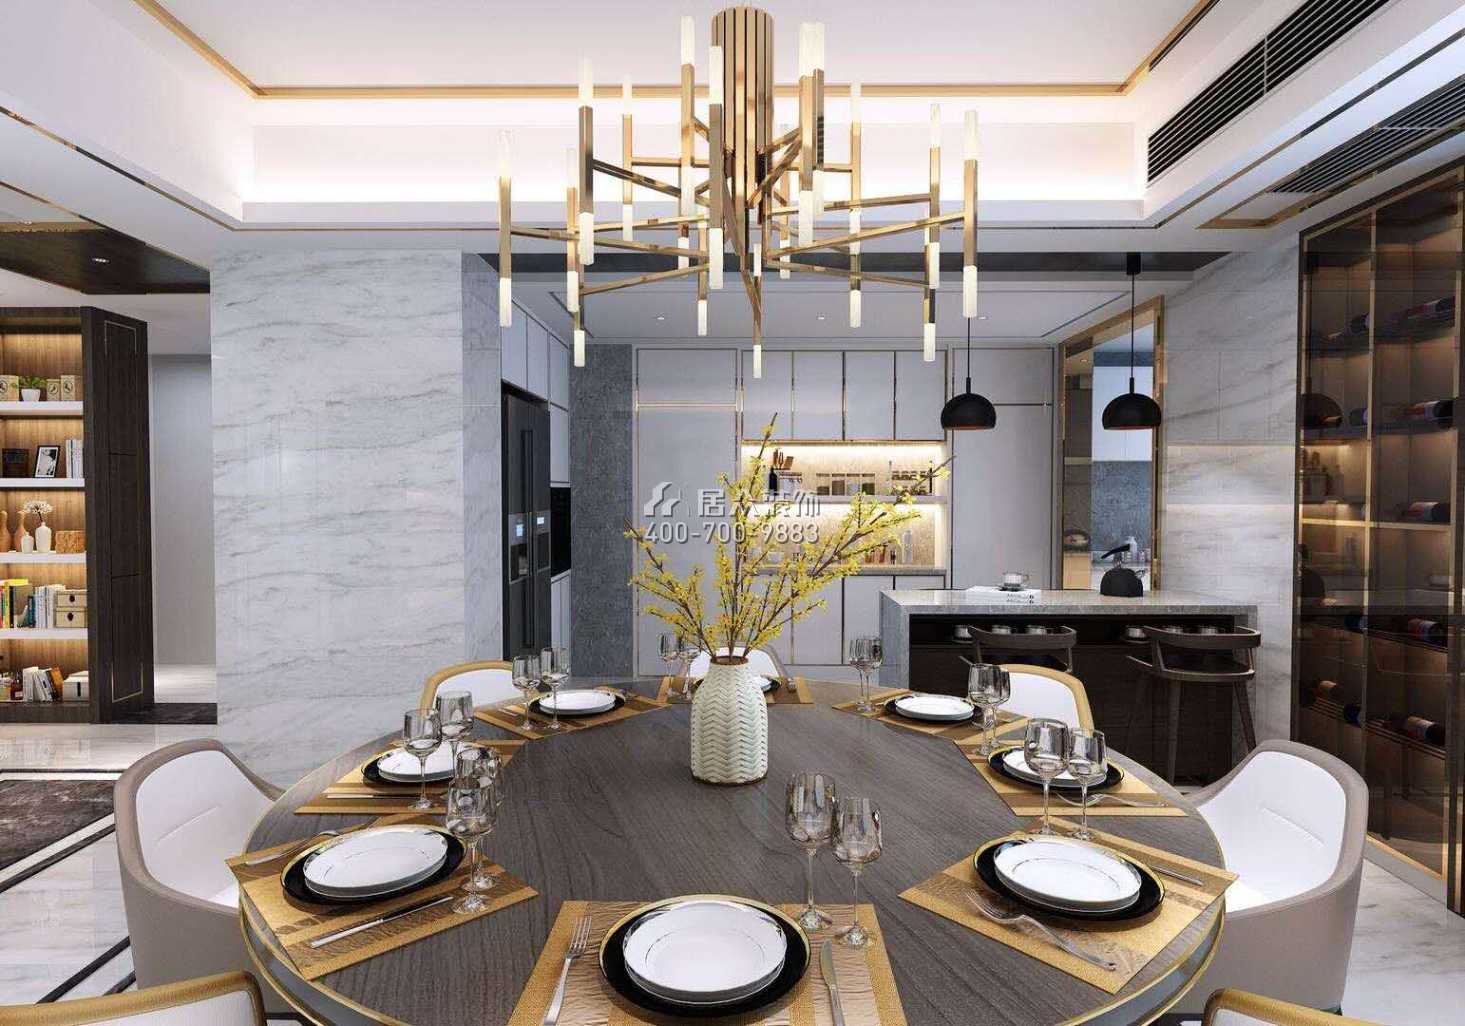 汉寿碧桂园260平方米现代简约风格平层户型餐厅装修效果图